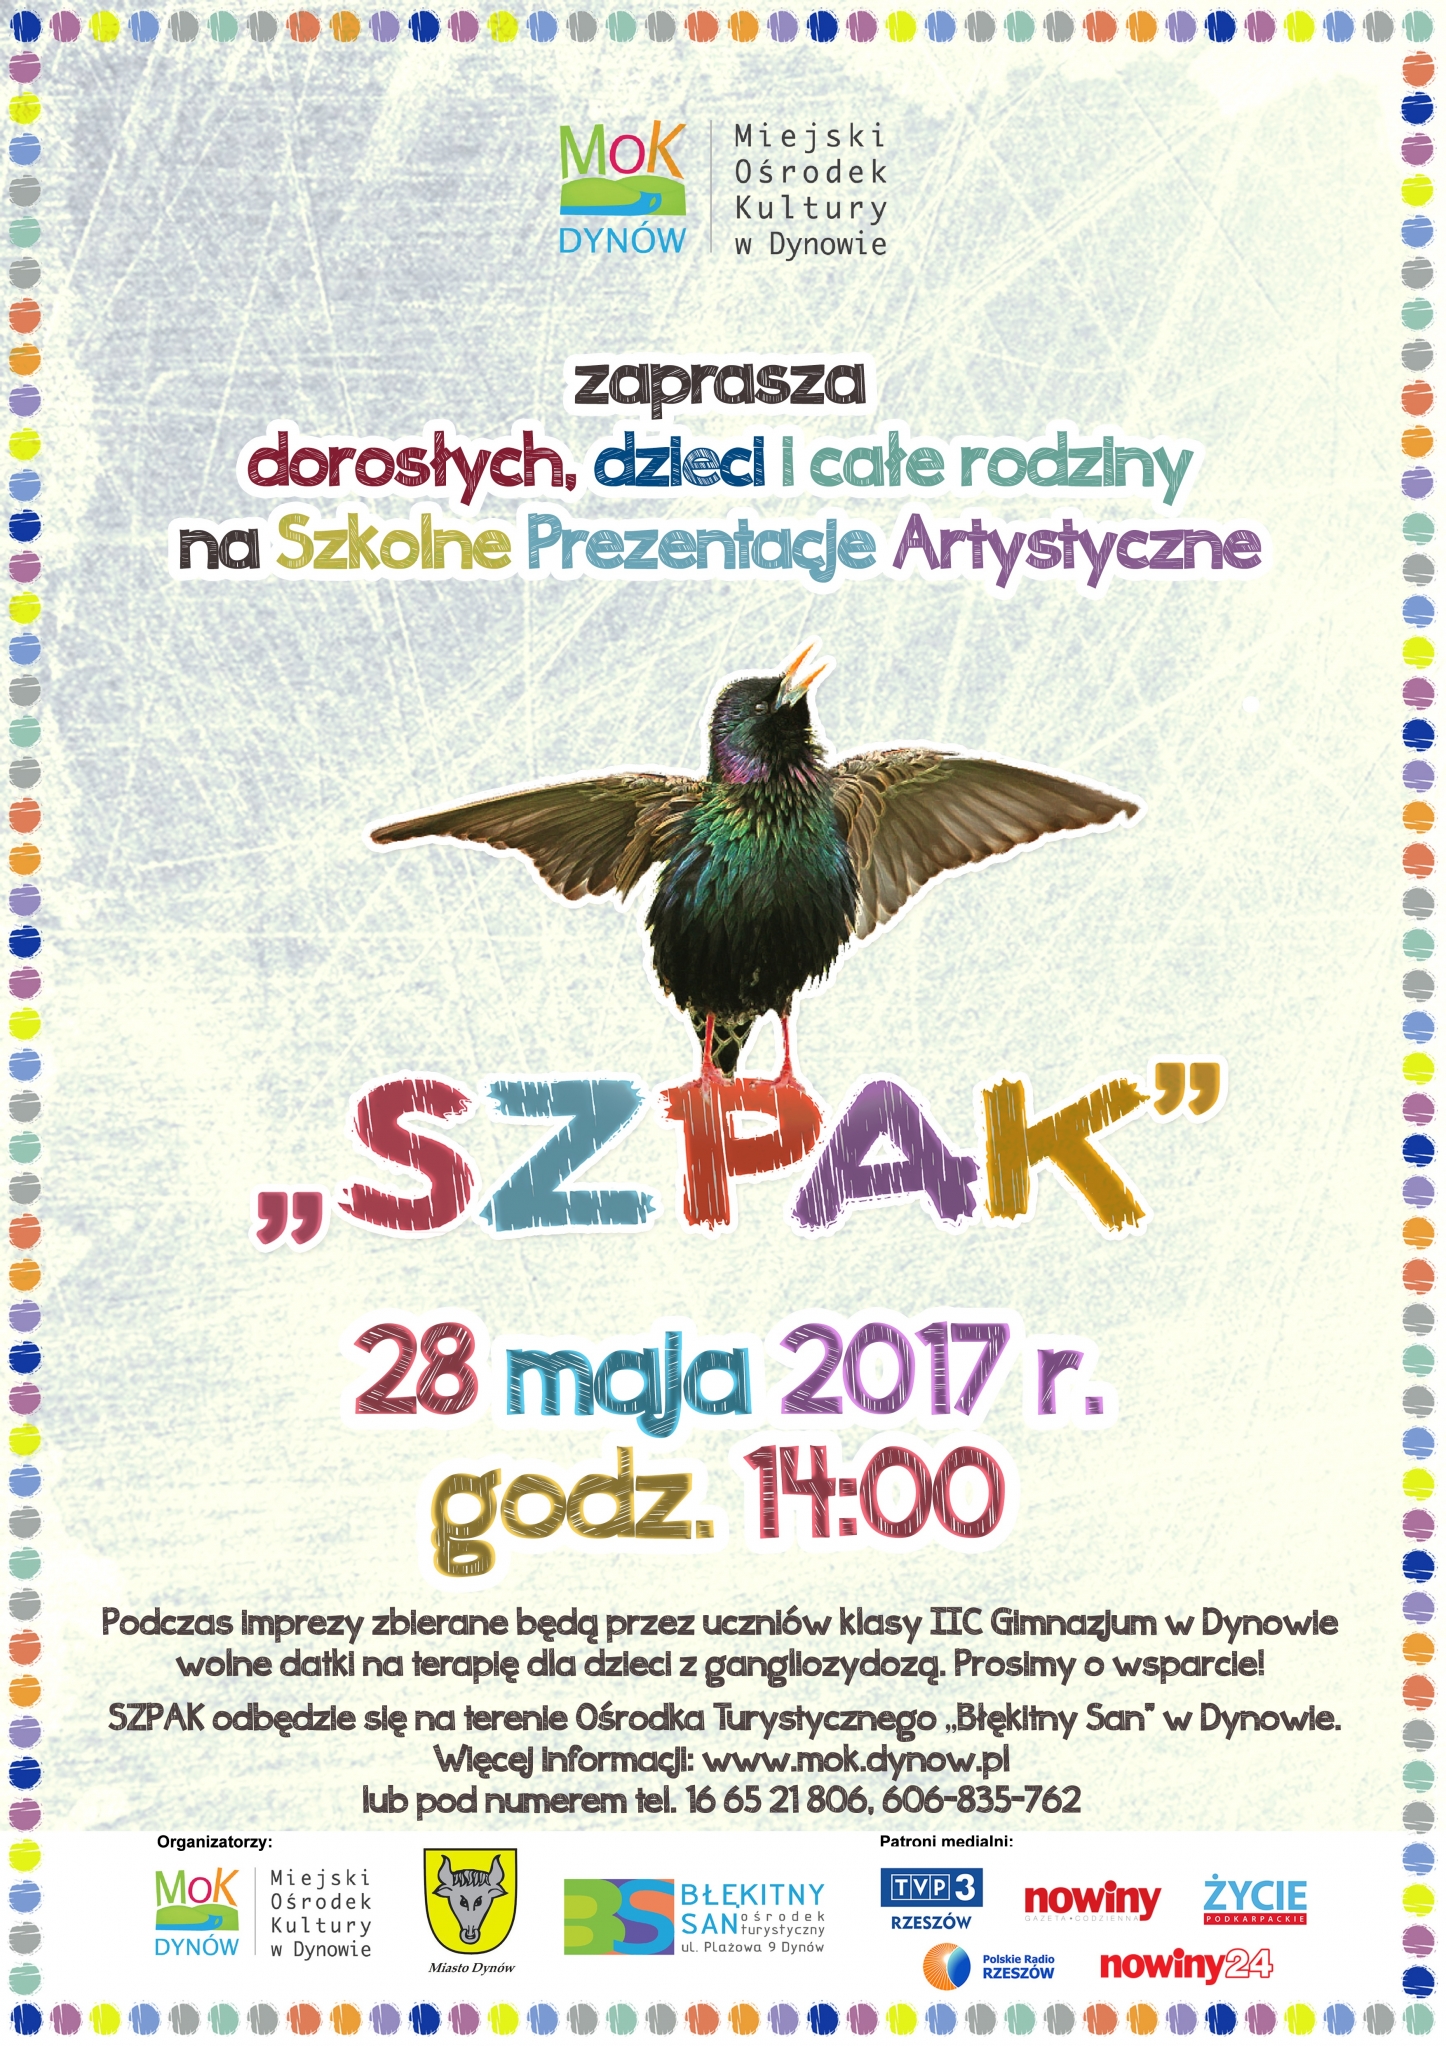 Dynowskie Szkolne Prezentacje Artystyczne - SZPAK 2017 rok